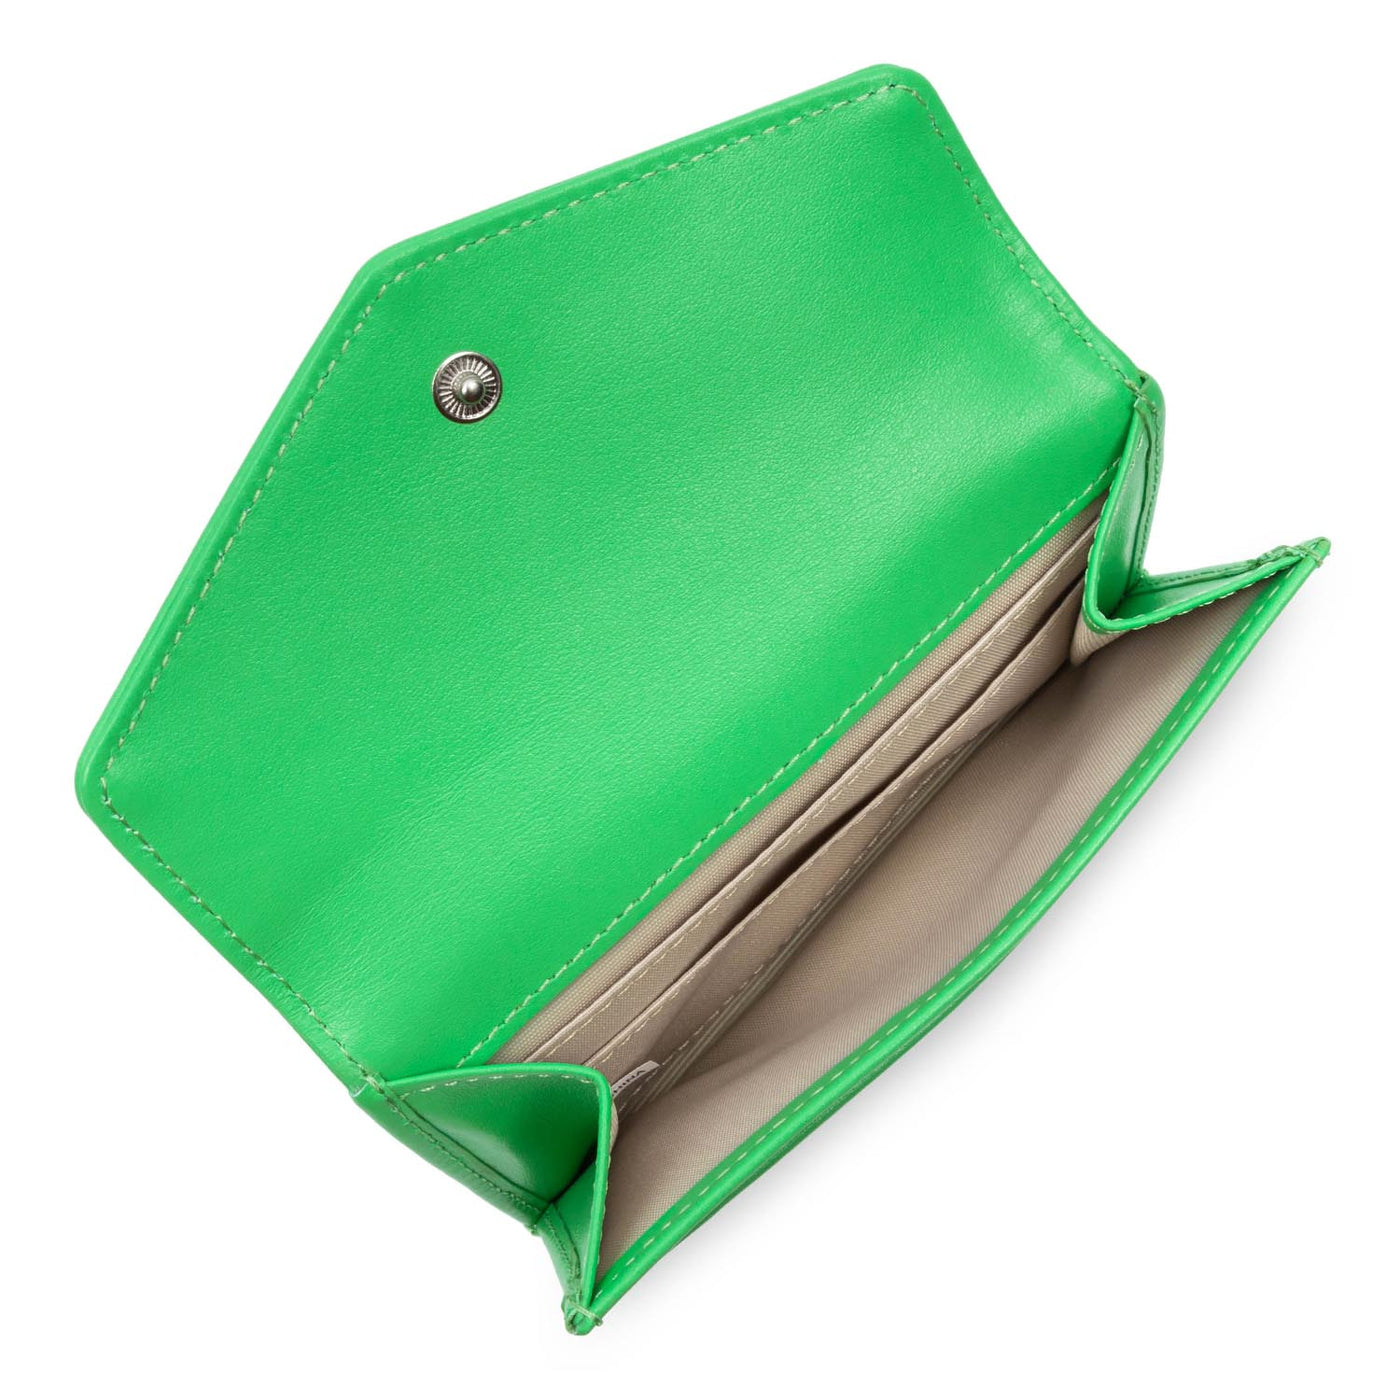 card holder - paris pm #couleur_vert-colo